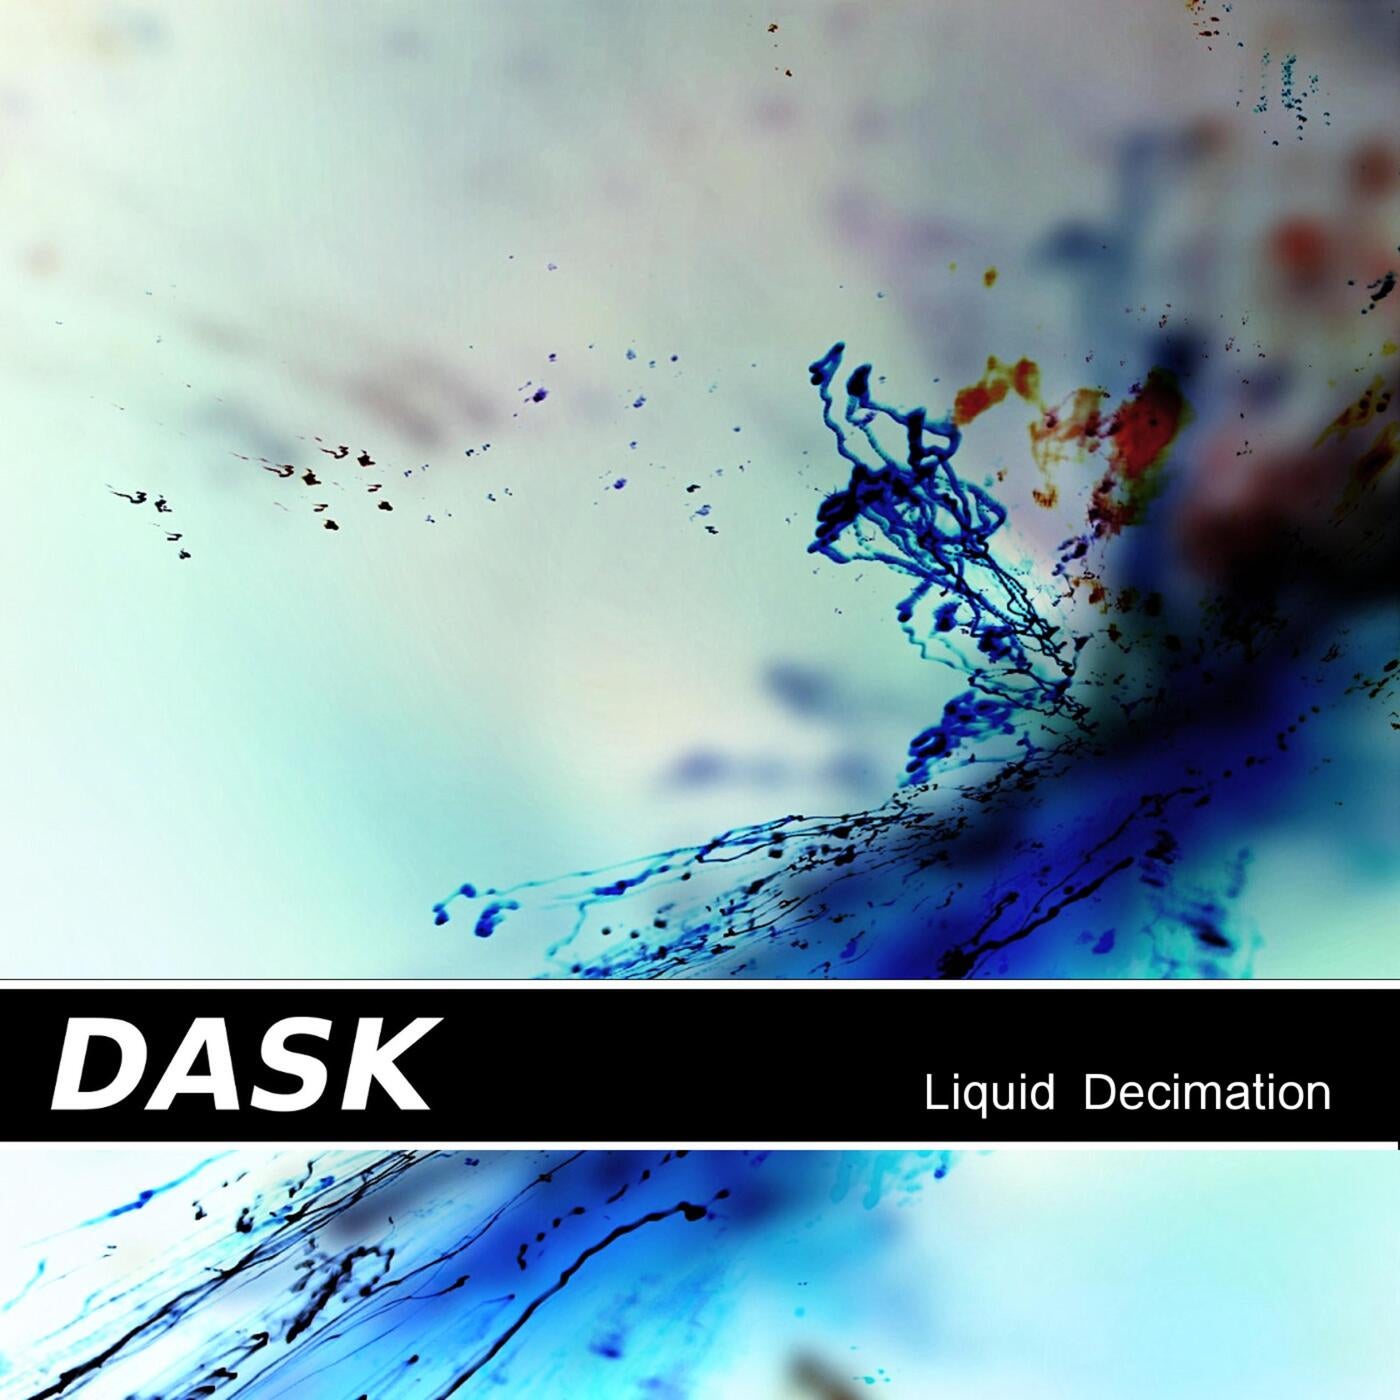 Liquid Decimation